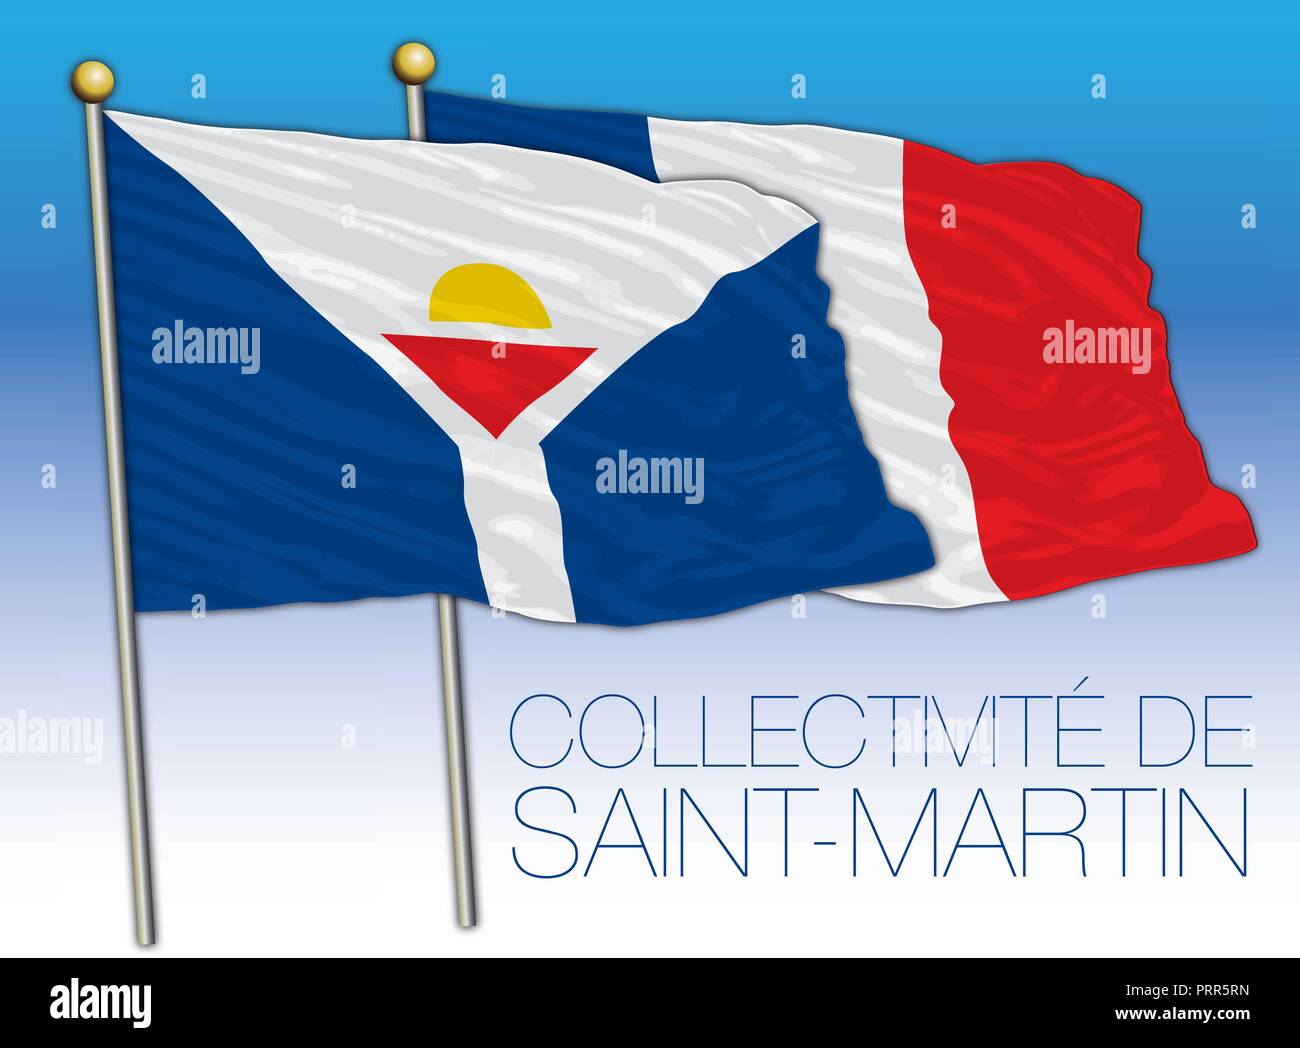 Collectivitè de Saint Martin official flag, France, vector illustration Stock Vector